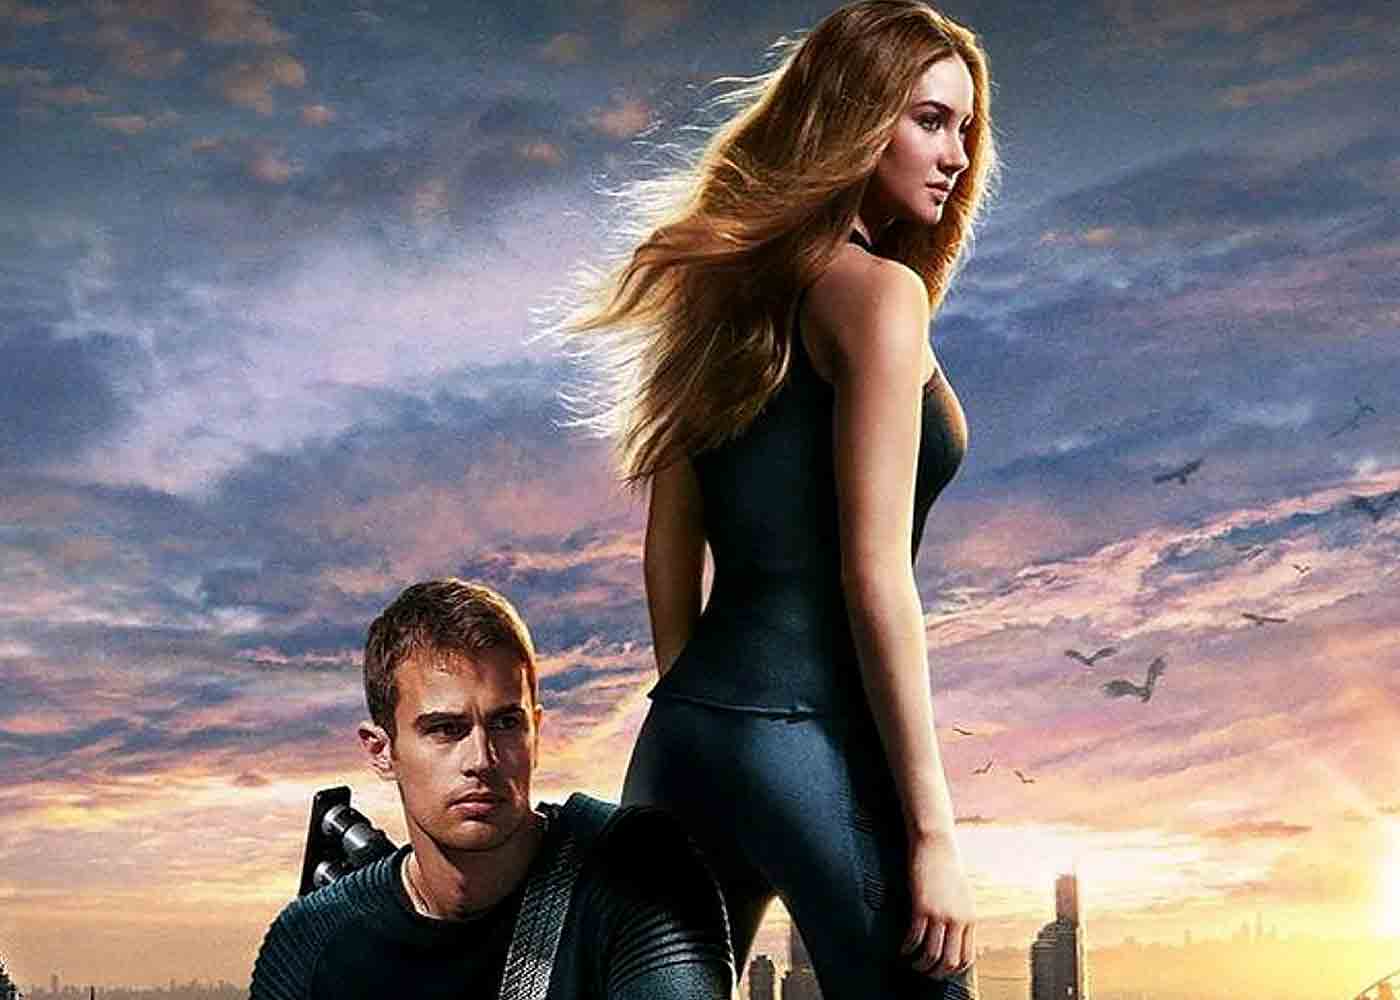 Film Adaptasi Novel Garapan Penulis Divergent Akan Dibuat! - Greenscene